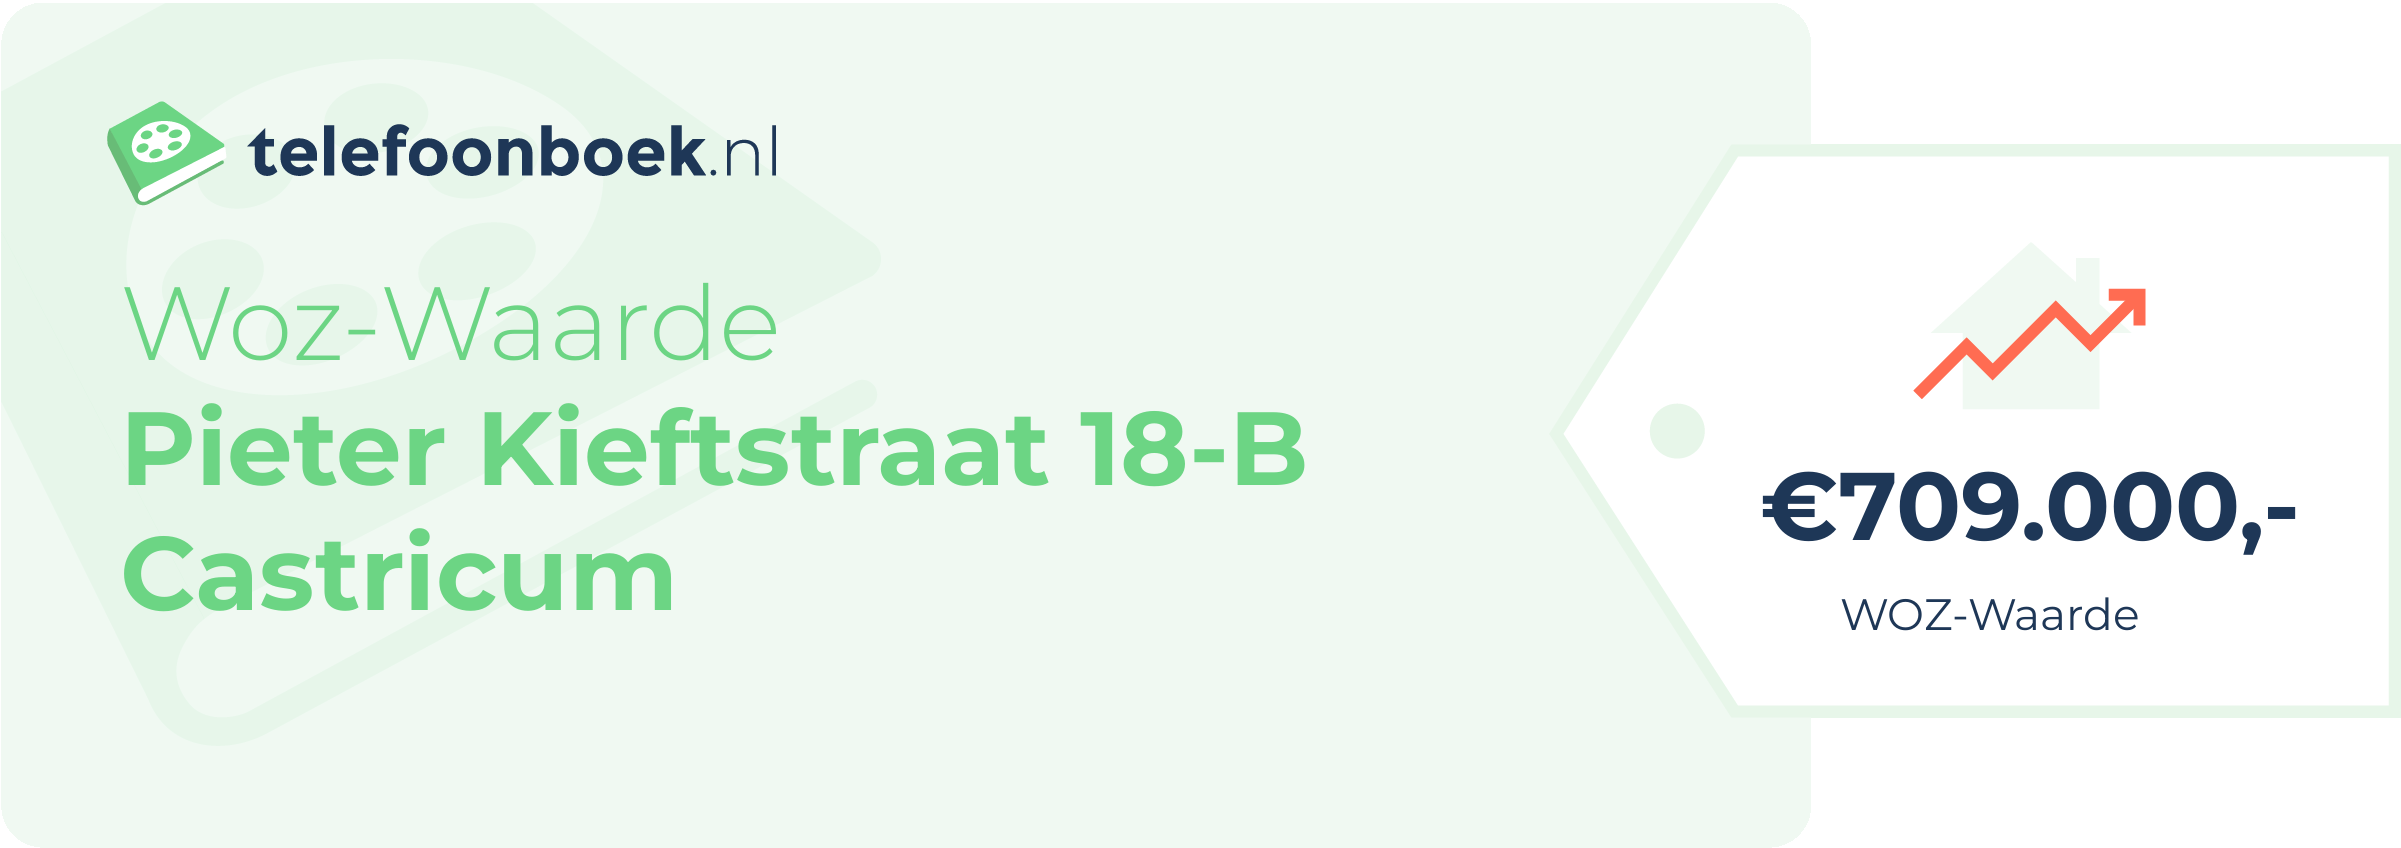 WOZ-waarde Pieter Kieftstraat 18-B Castricum